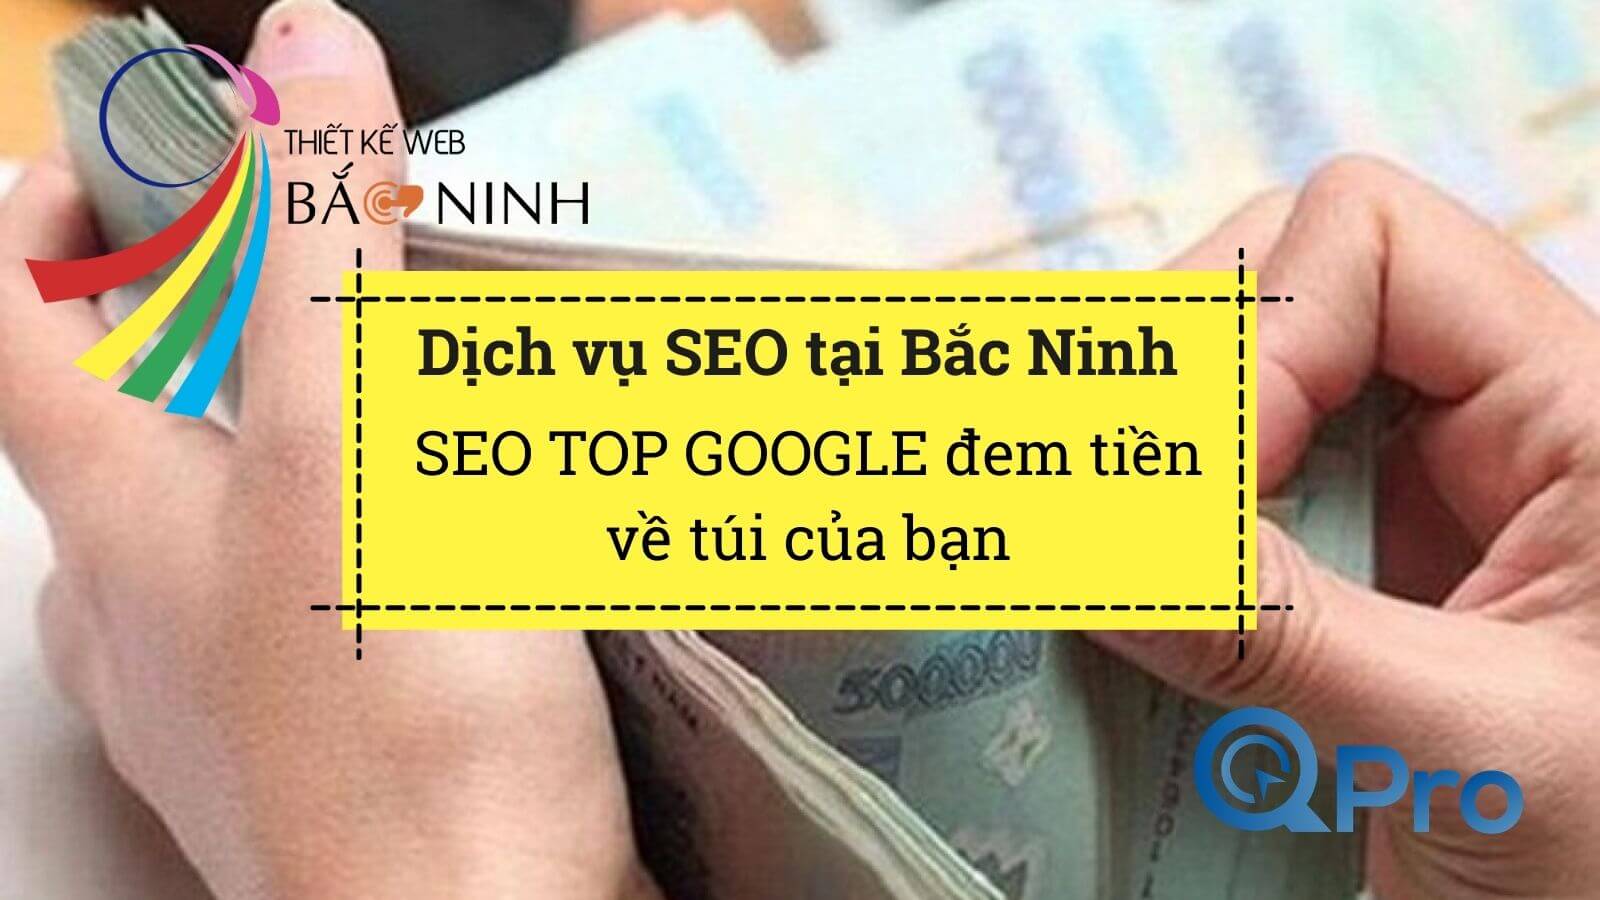 Qpro Dịch vụ SEO tại Bắc Ninh - SEO Web lên Top Google đem tiền về cho bạn